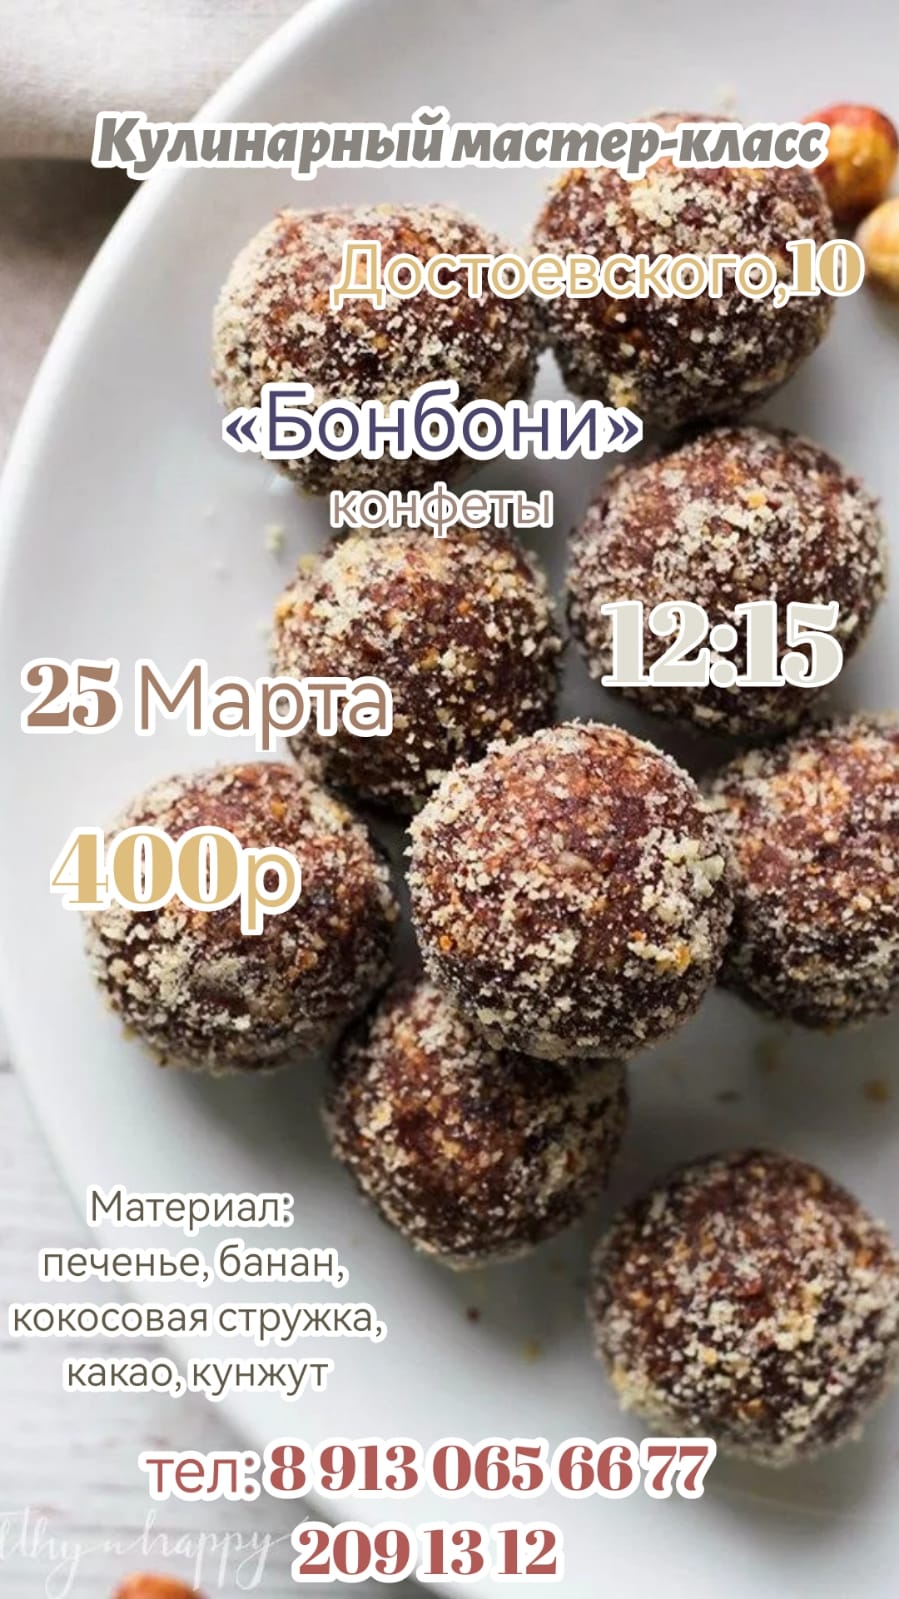 Кулинарный мастер класс - конфеты Бонбони - в субботу, 25 марта, в 12.15